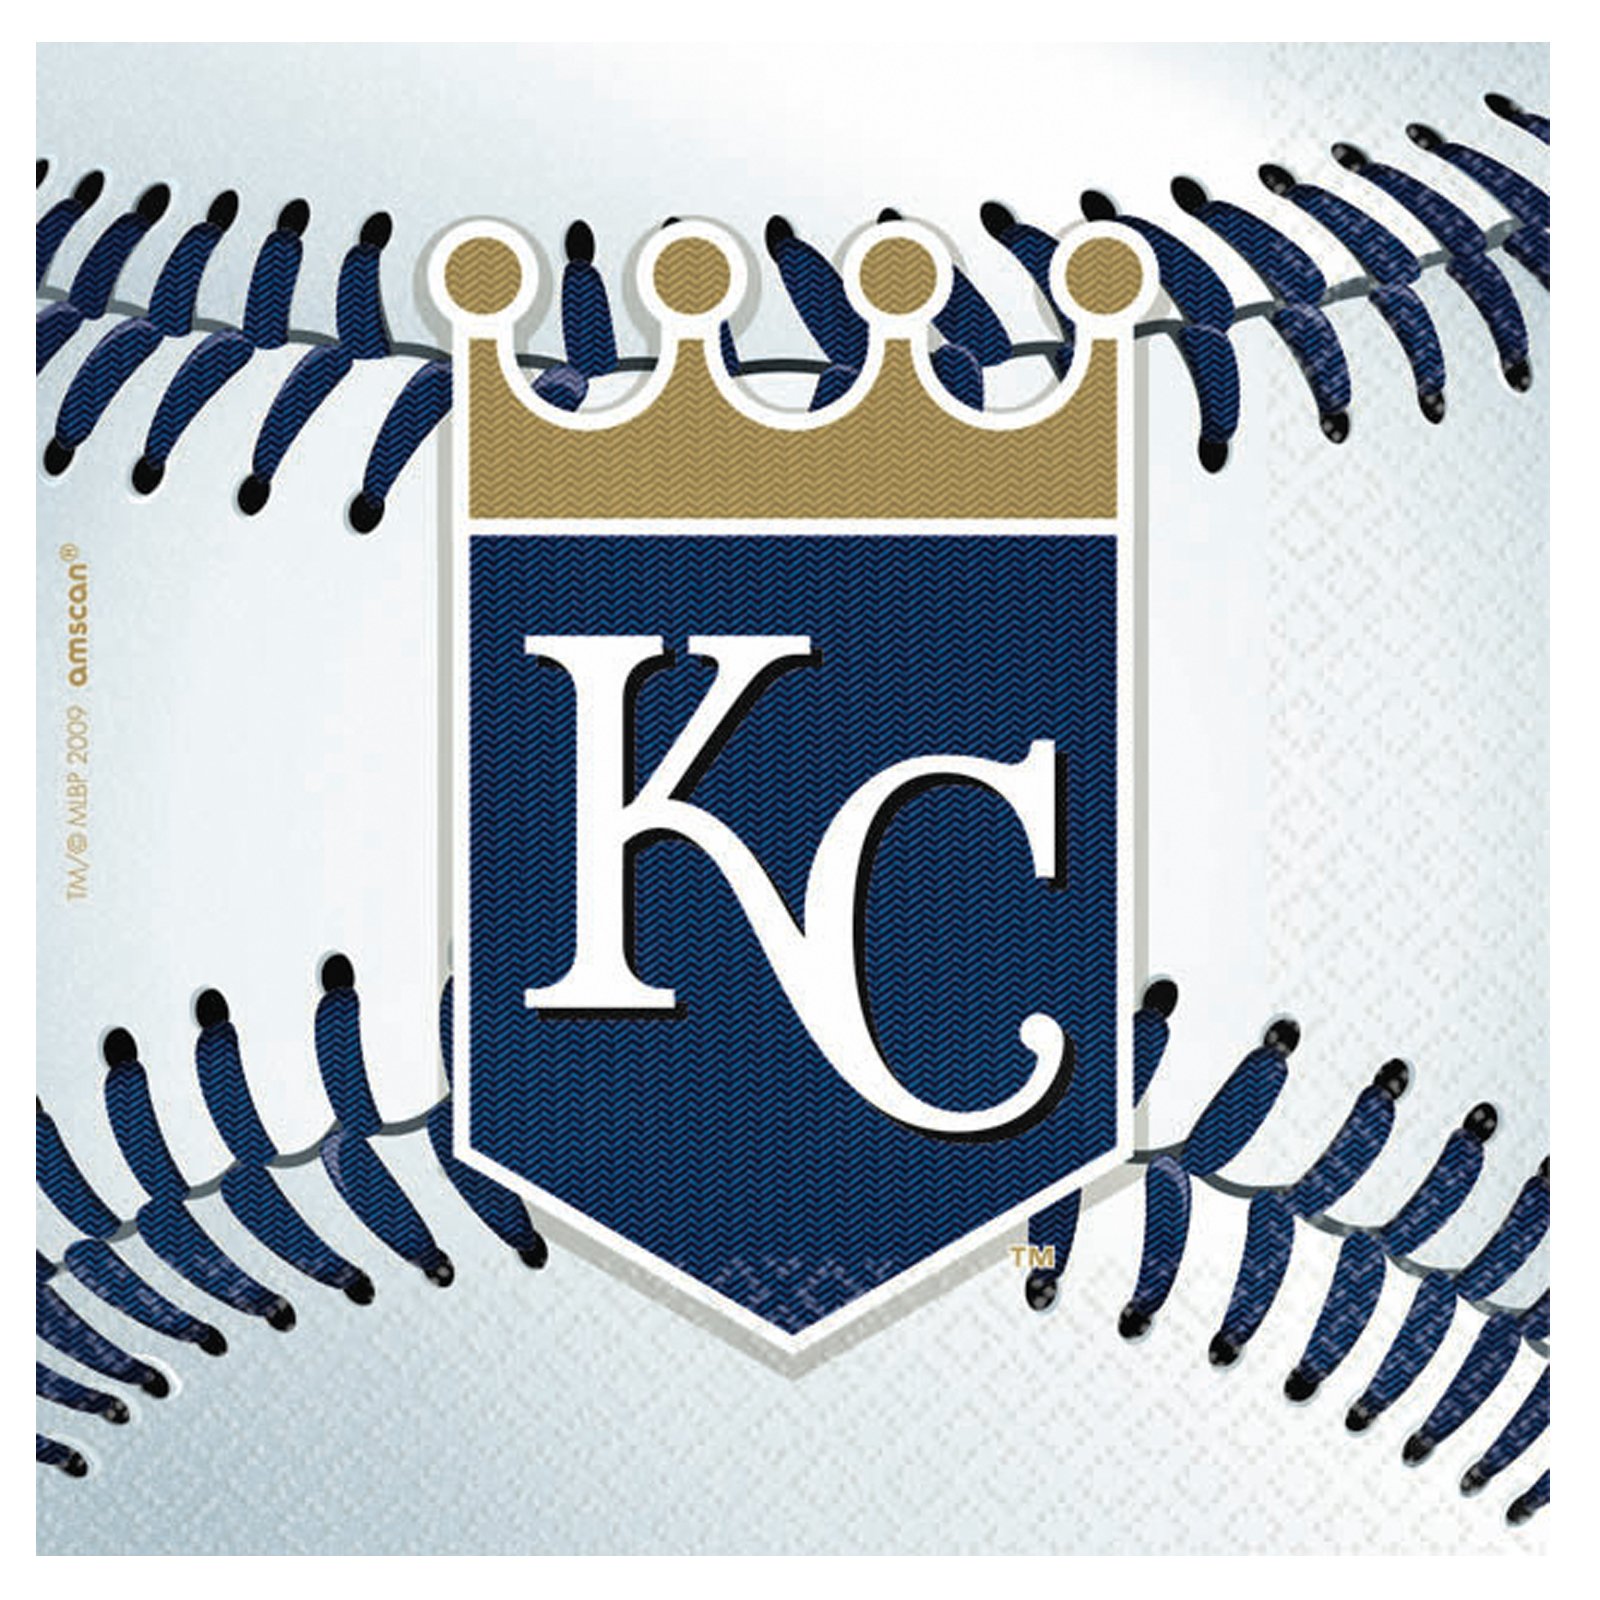 Cheap Kansas City Royals Baseball   Beverage Napkins at Go4Costumes